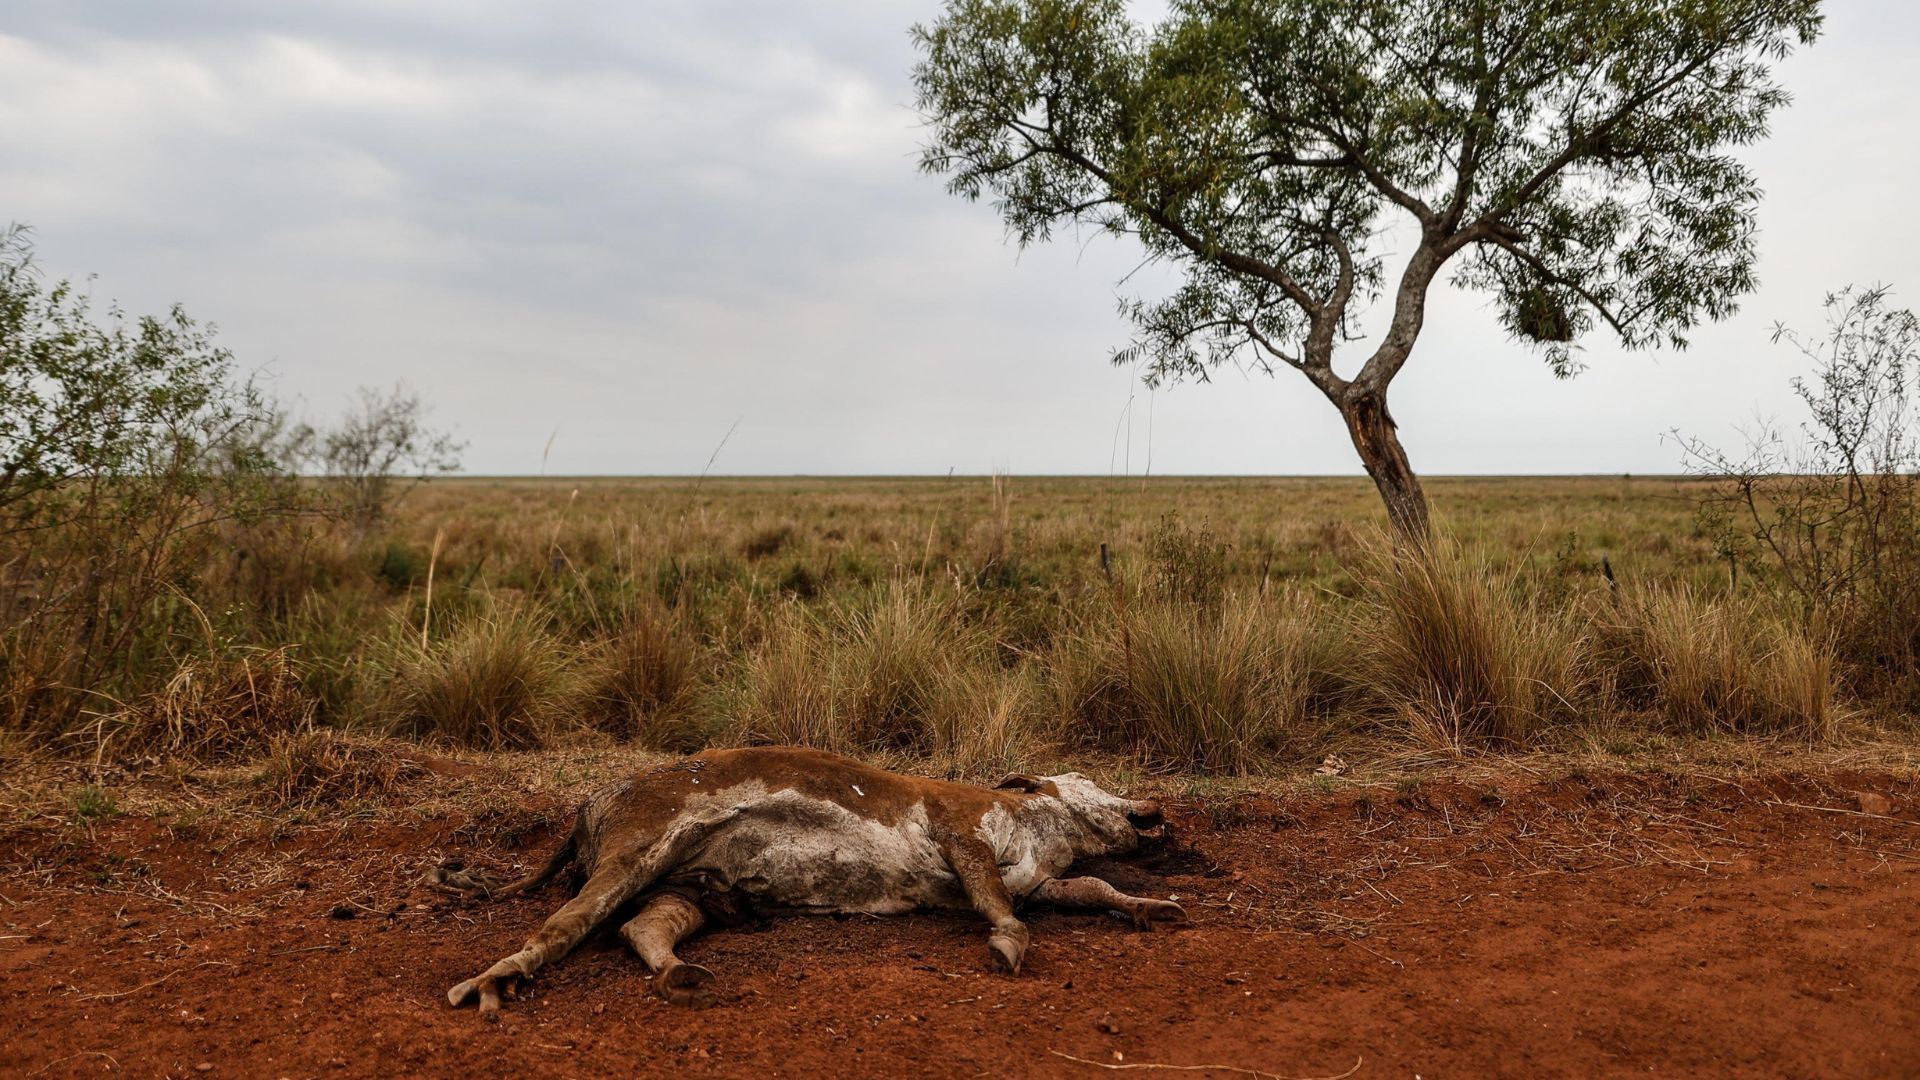 Un animale giace morto a causa della siccità in un settore colpito dagli incendi che consumano grandi aree del territorio della provincia di Corrientes, in Argentina